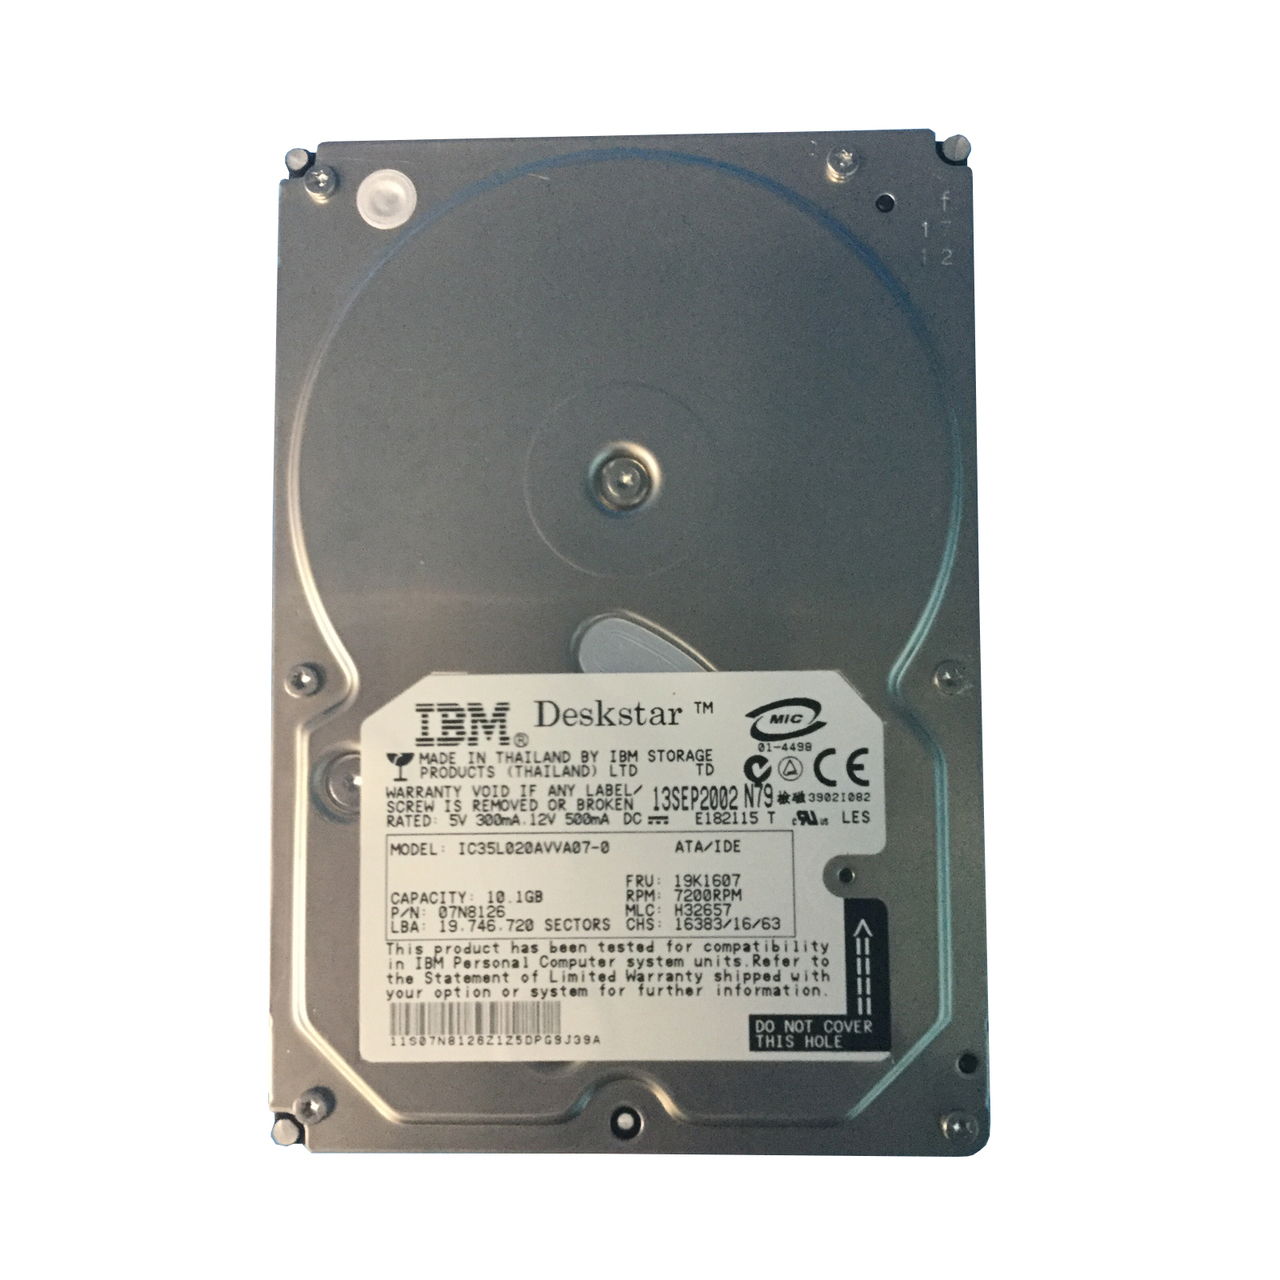 19K1607 | IBM 10GB 7200RPM IDE 3.5 Hard Drive